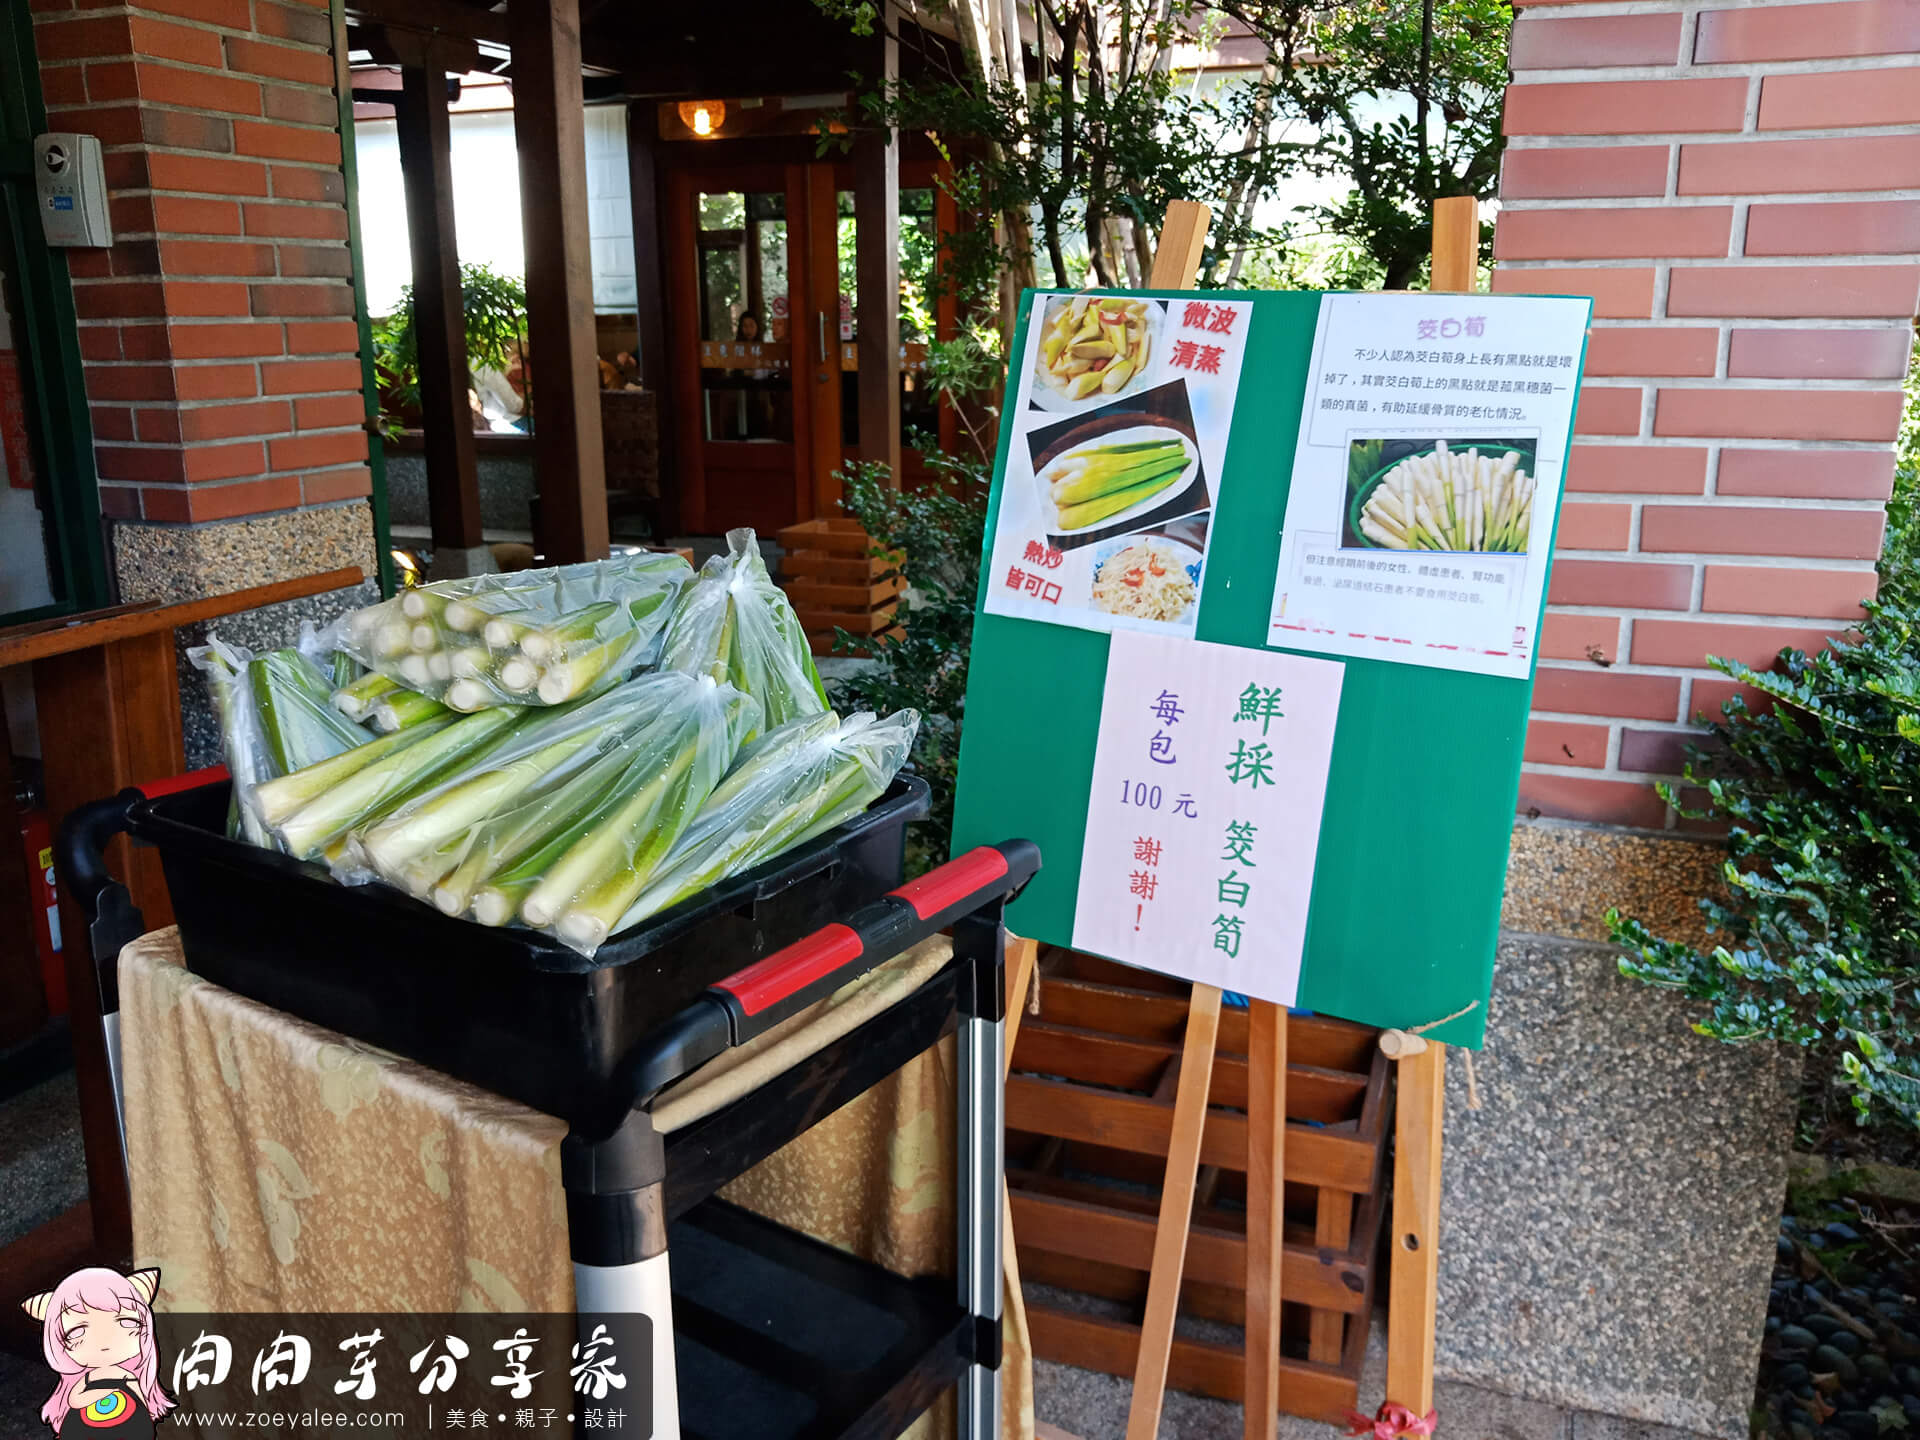 壹等賞景觀茶園餐廳餐廳入口販售新鮮蔬菜